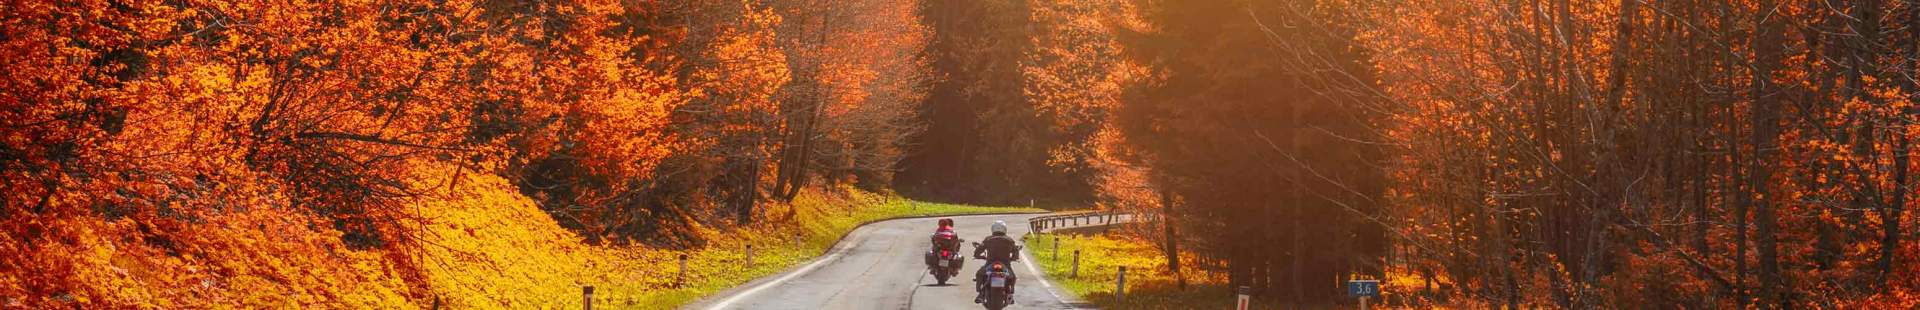 Motorradfahrer im Herbst